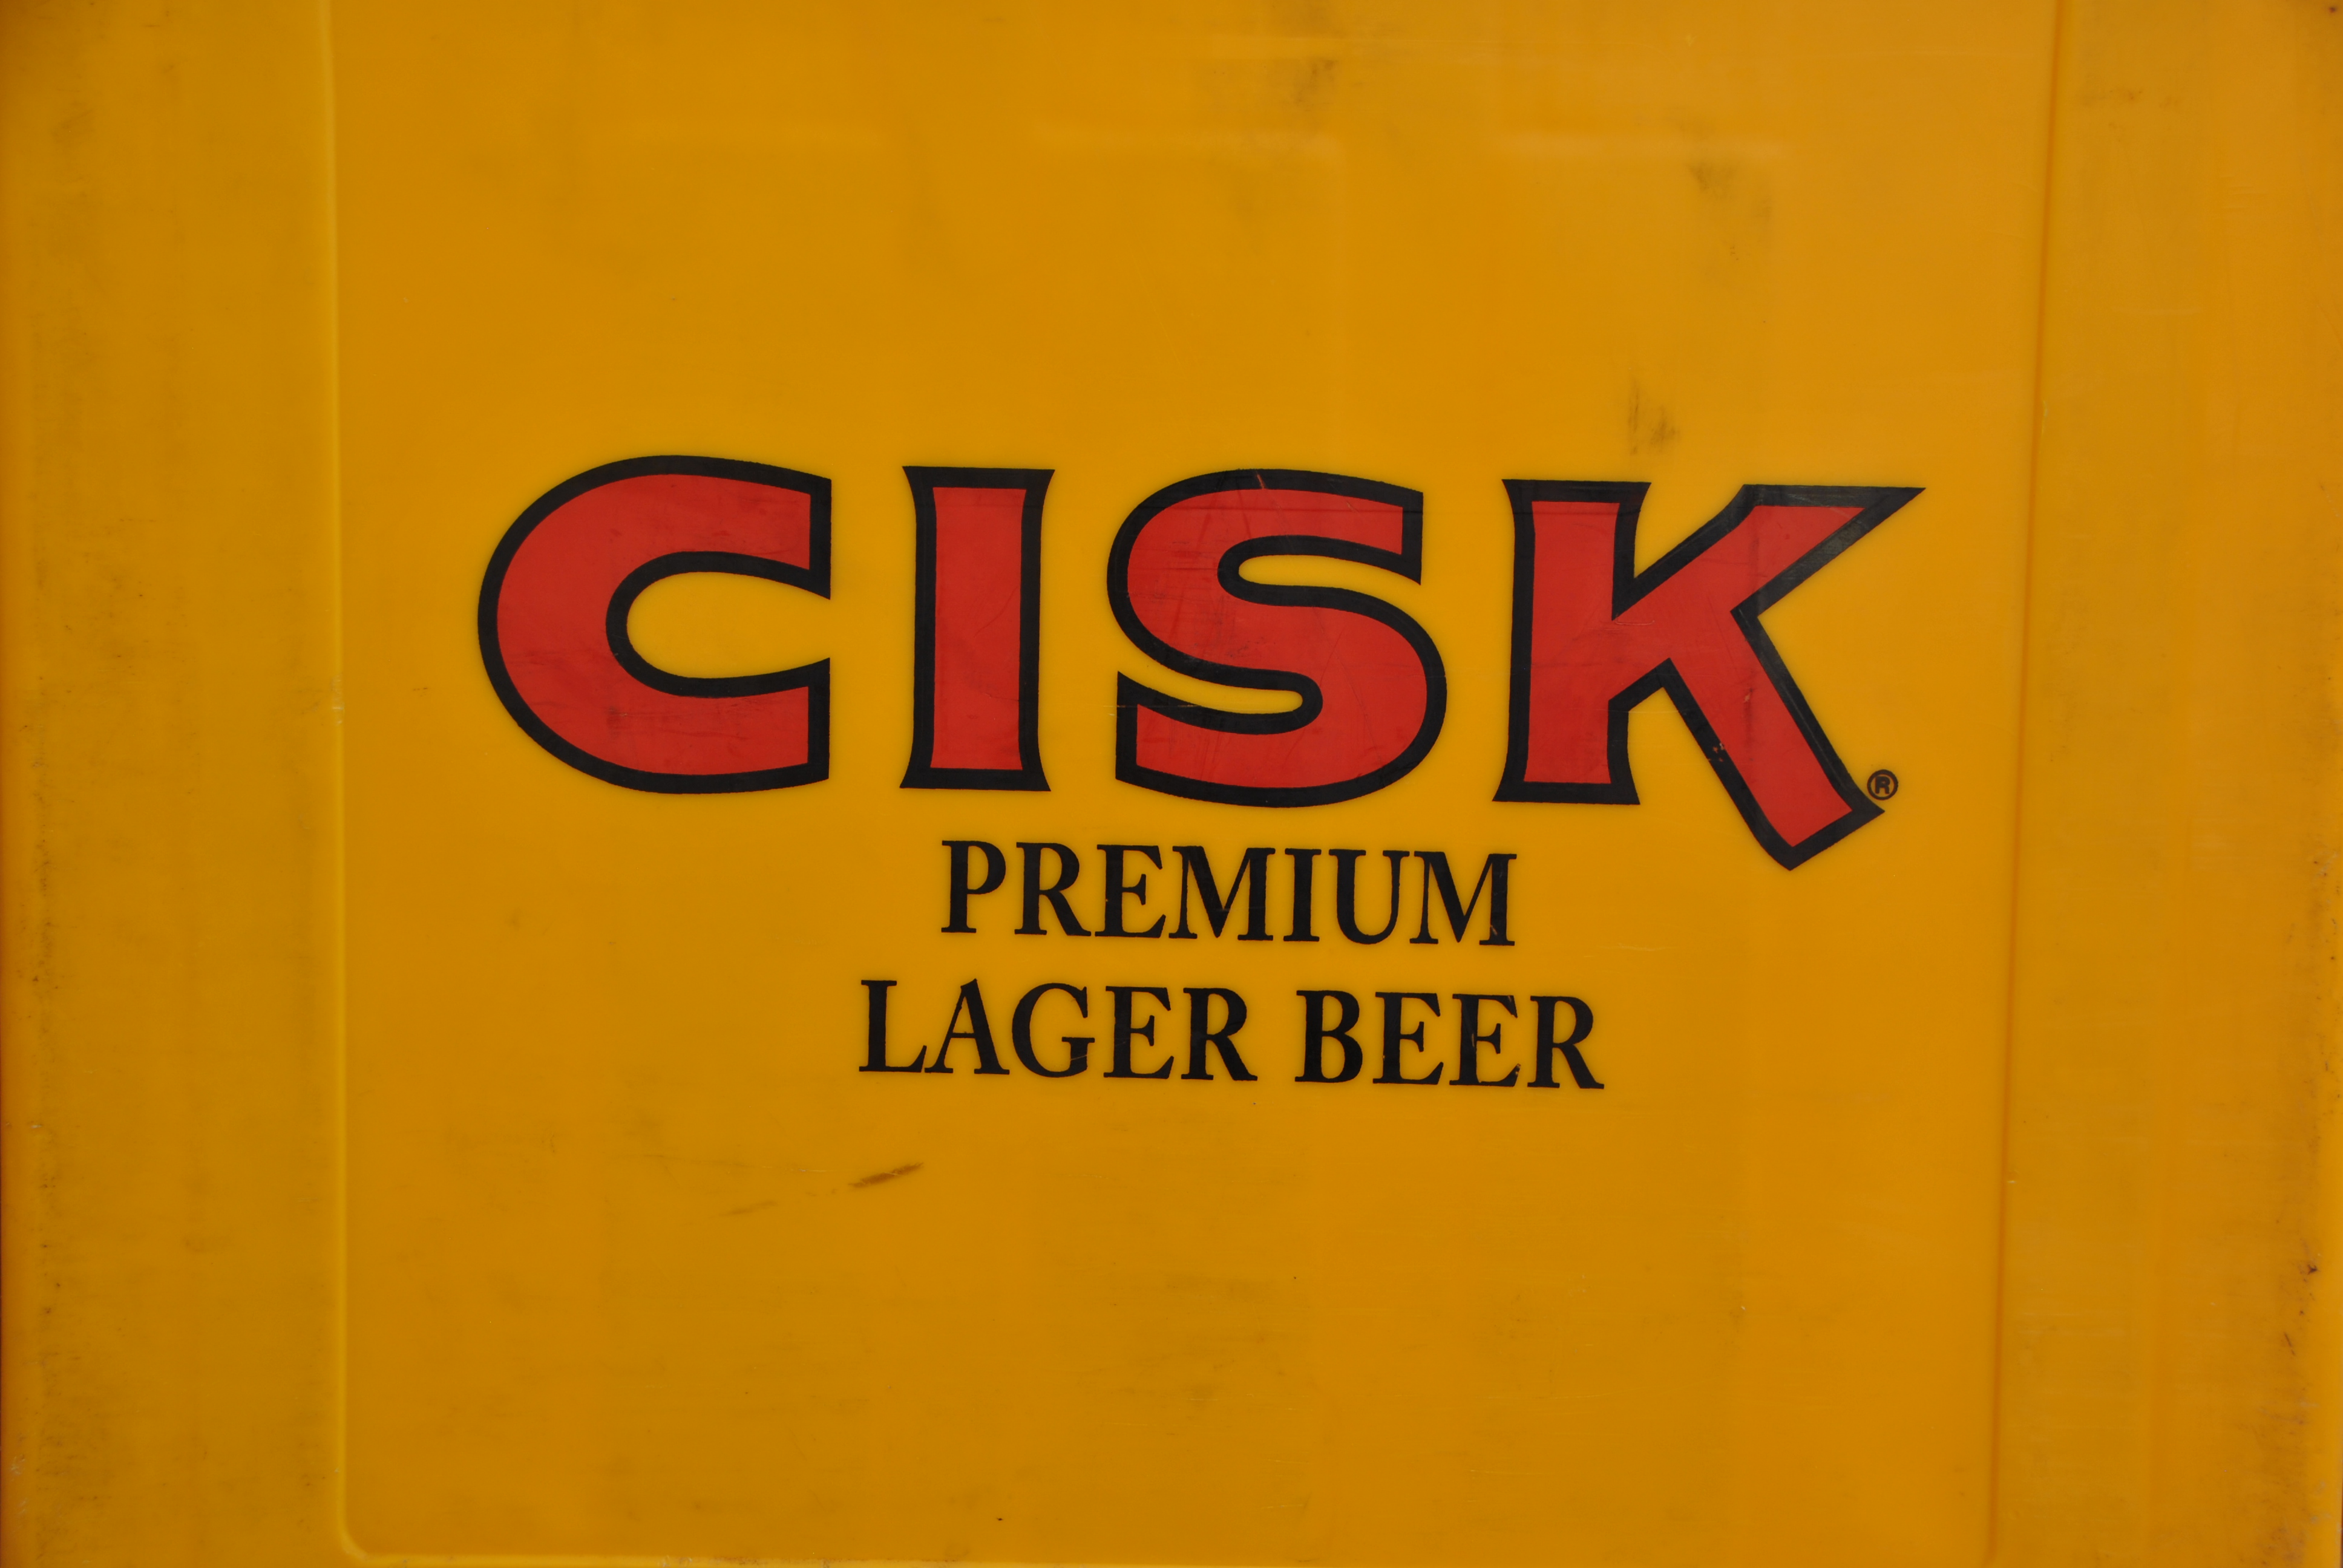 cisk, la birra maltese